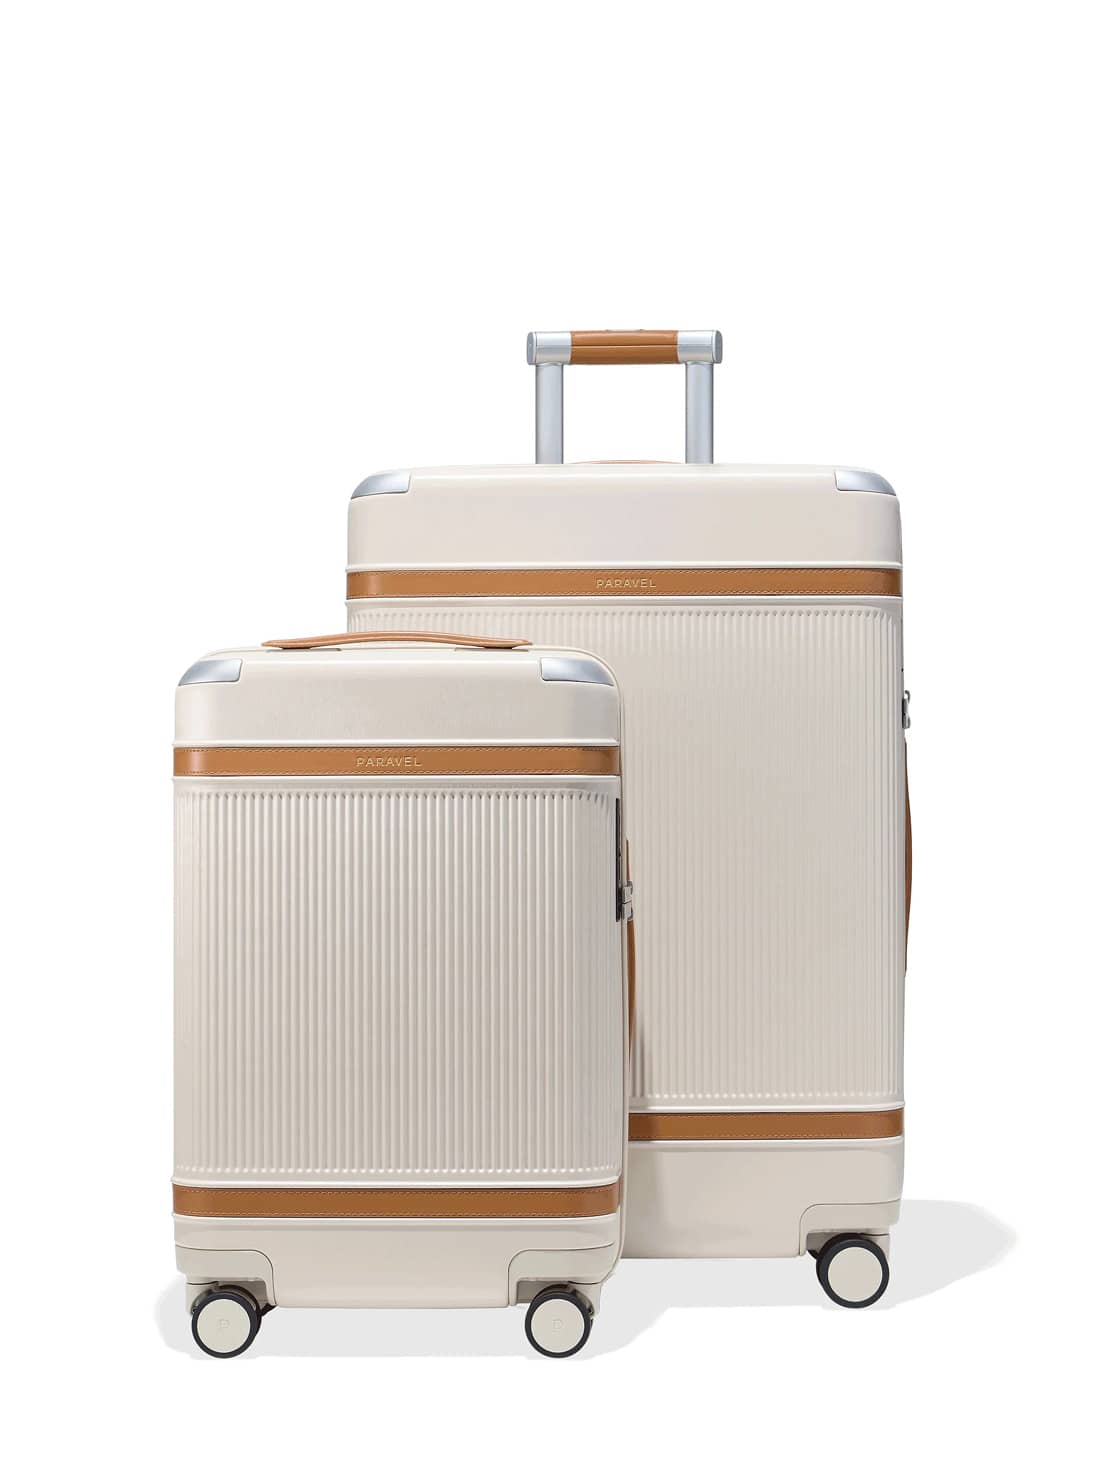 Designer luggage sets